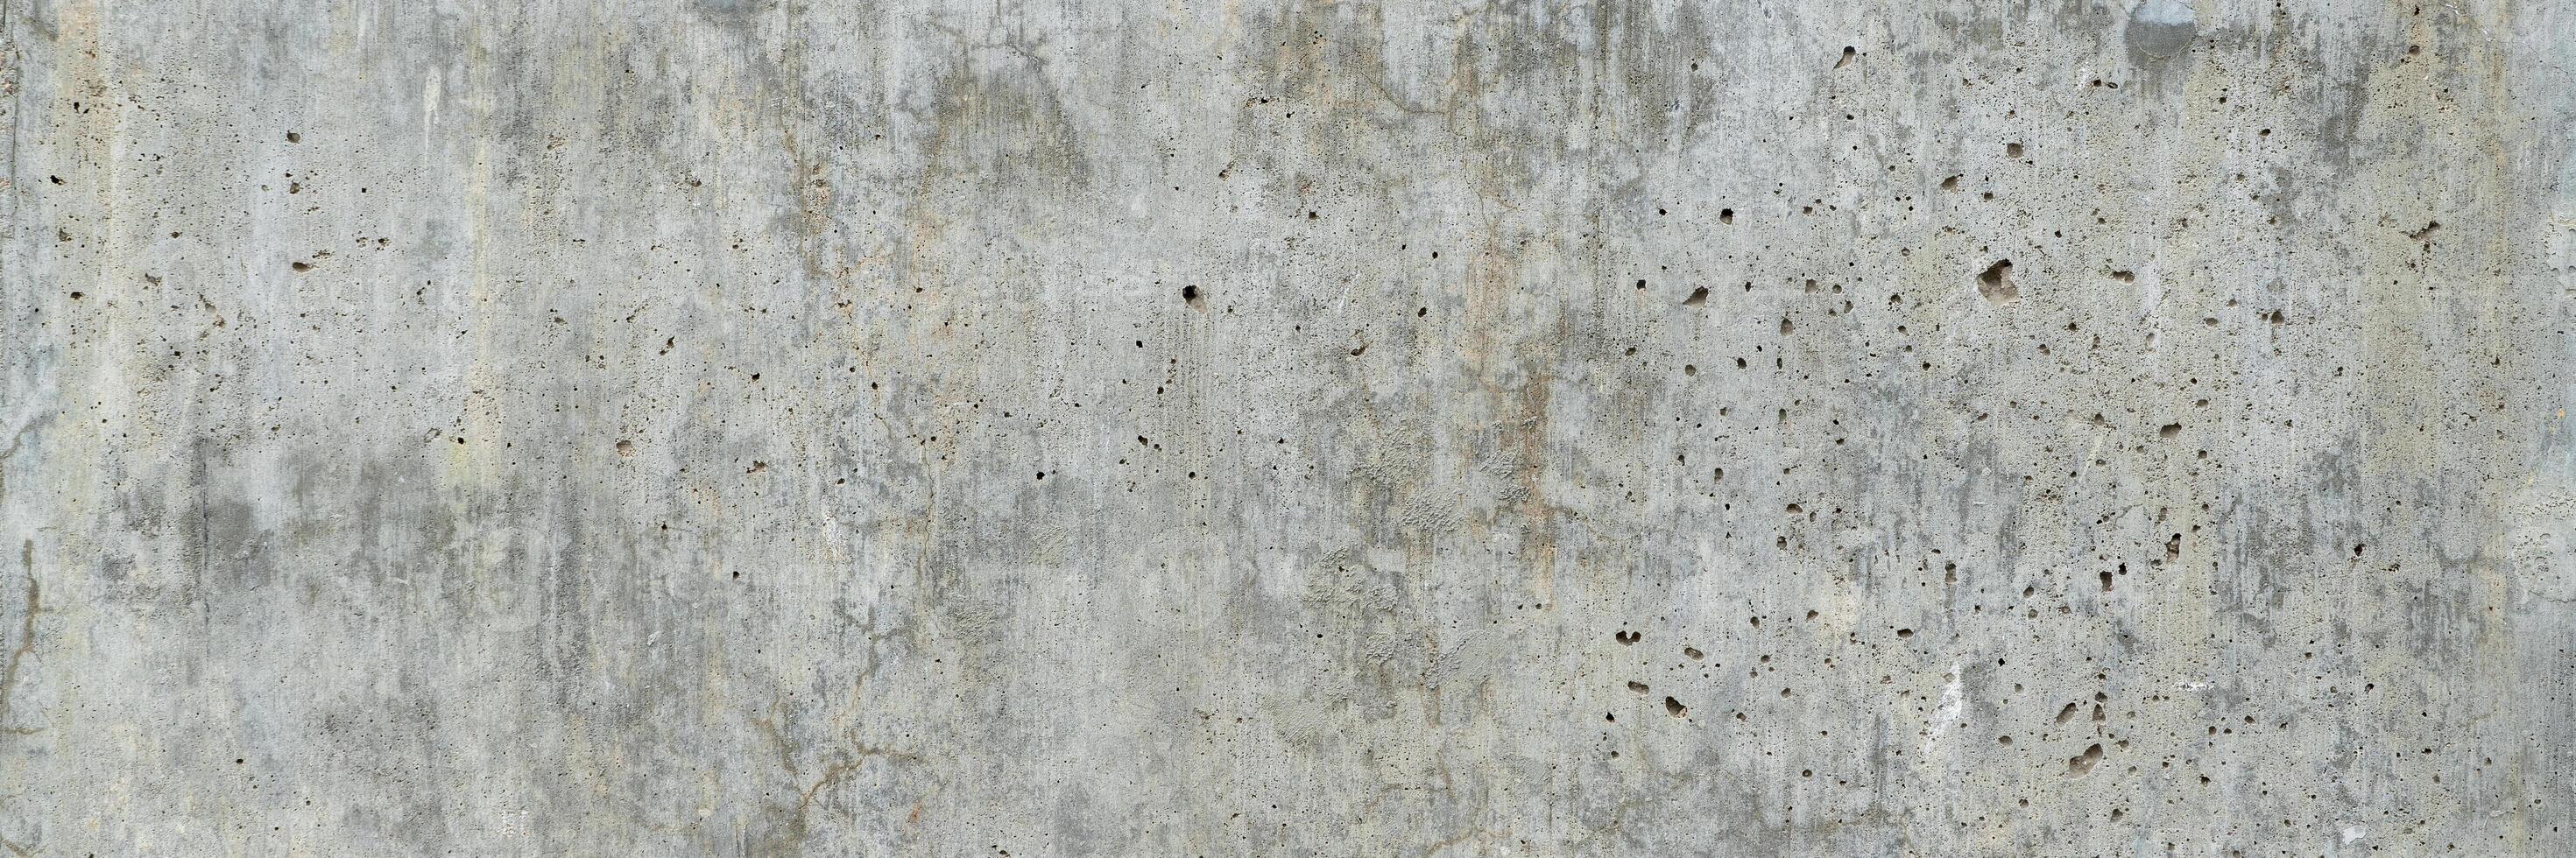 textura de antiguo grunge hormigón pared foto